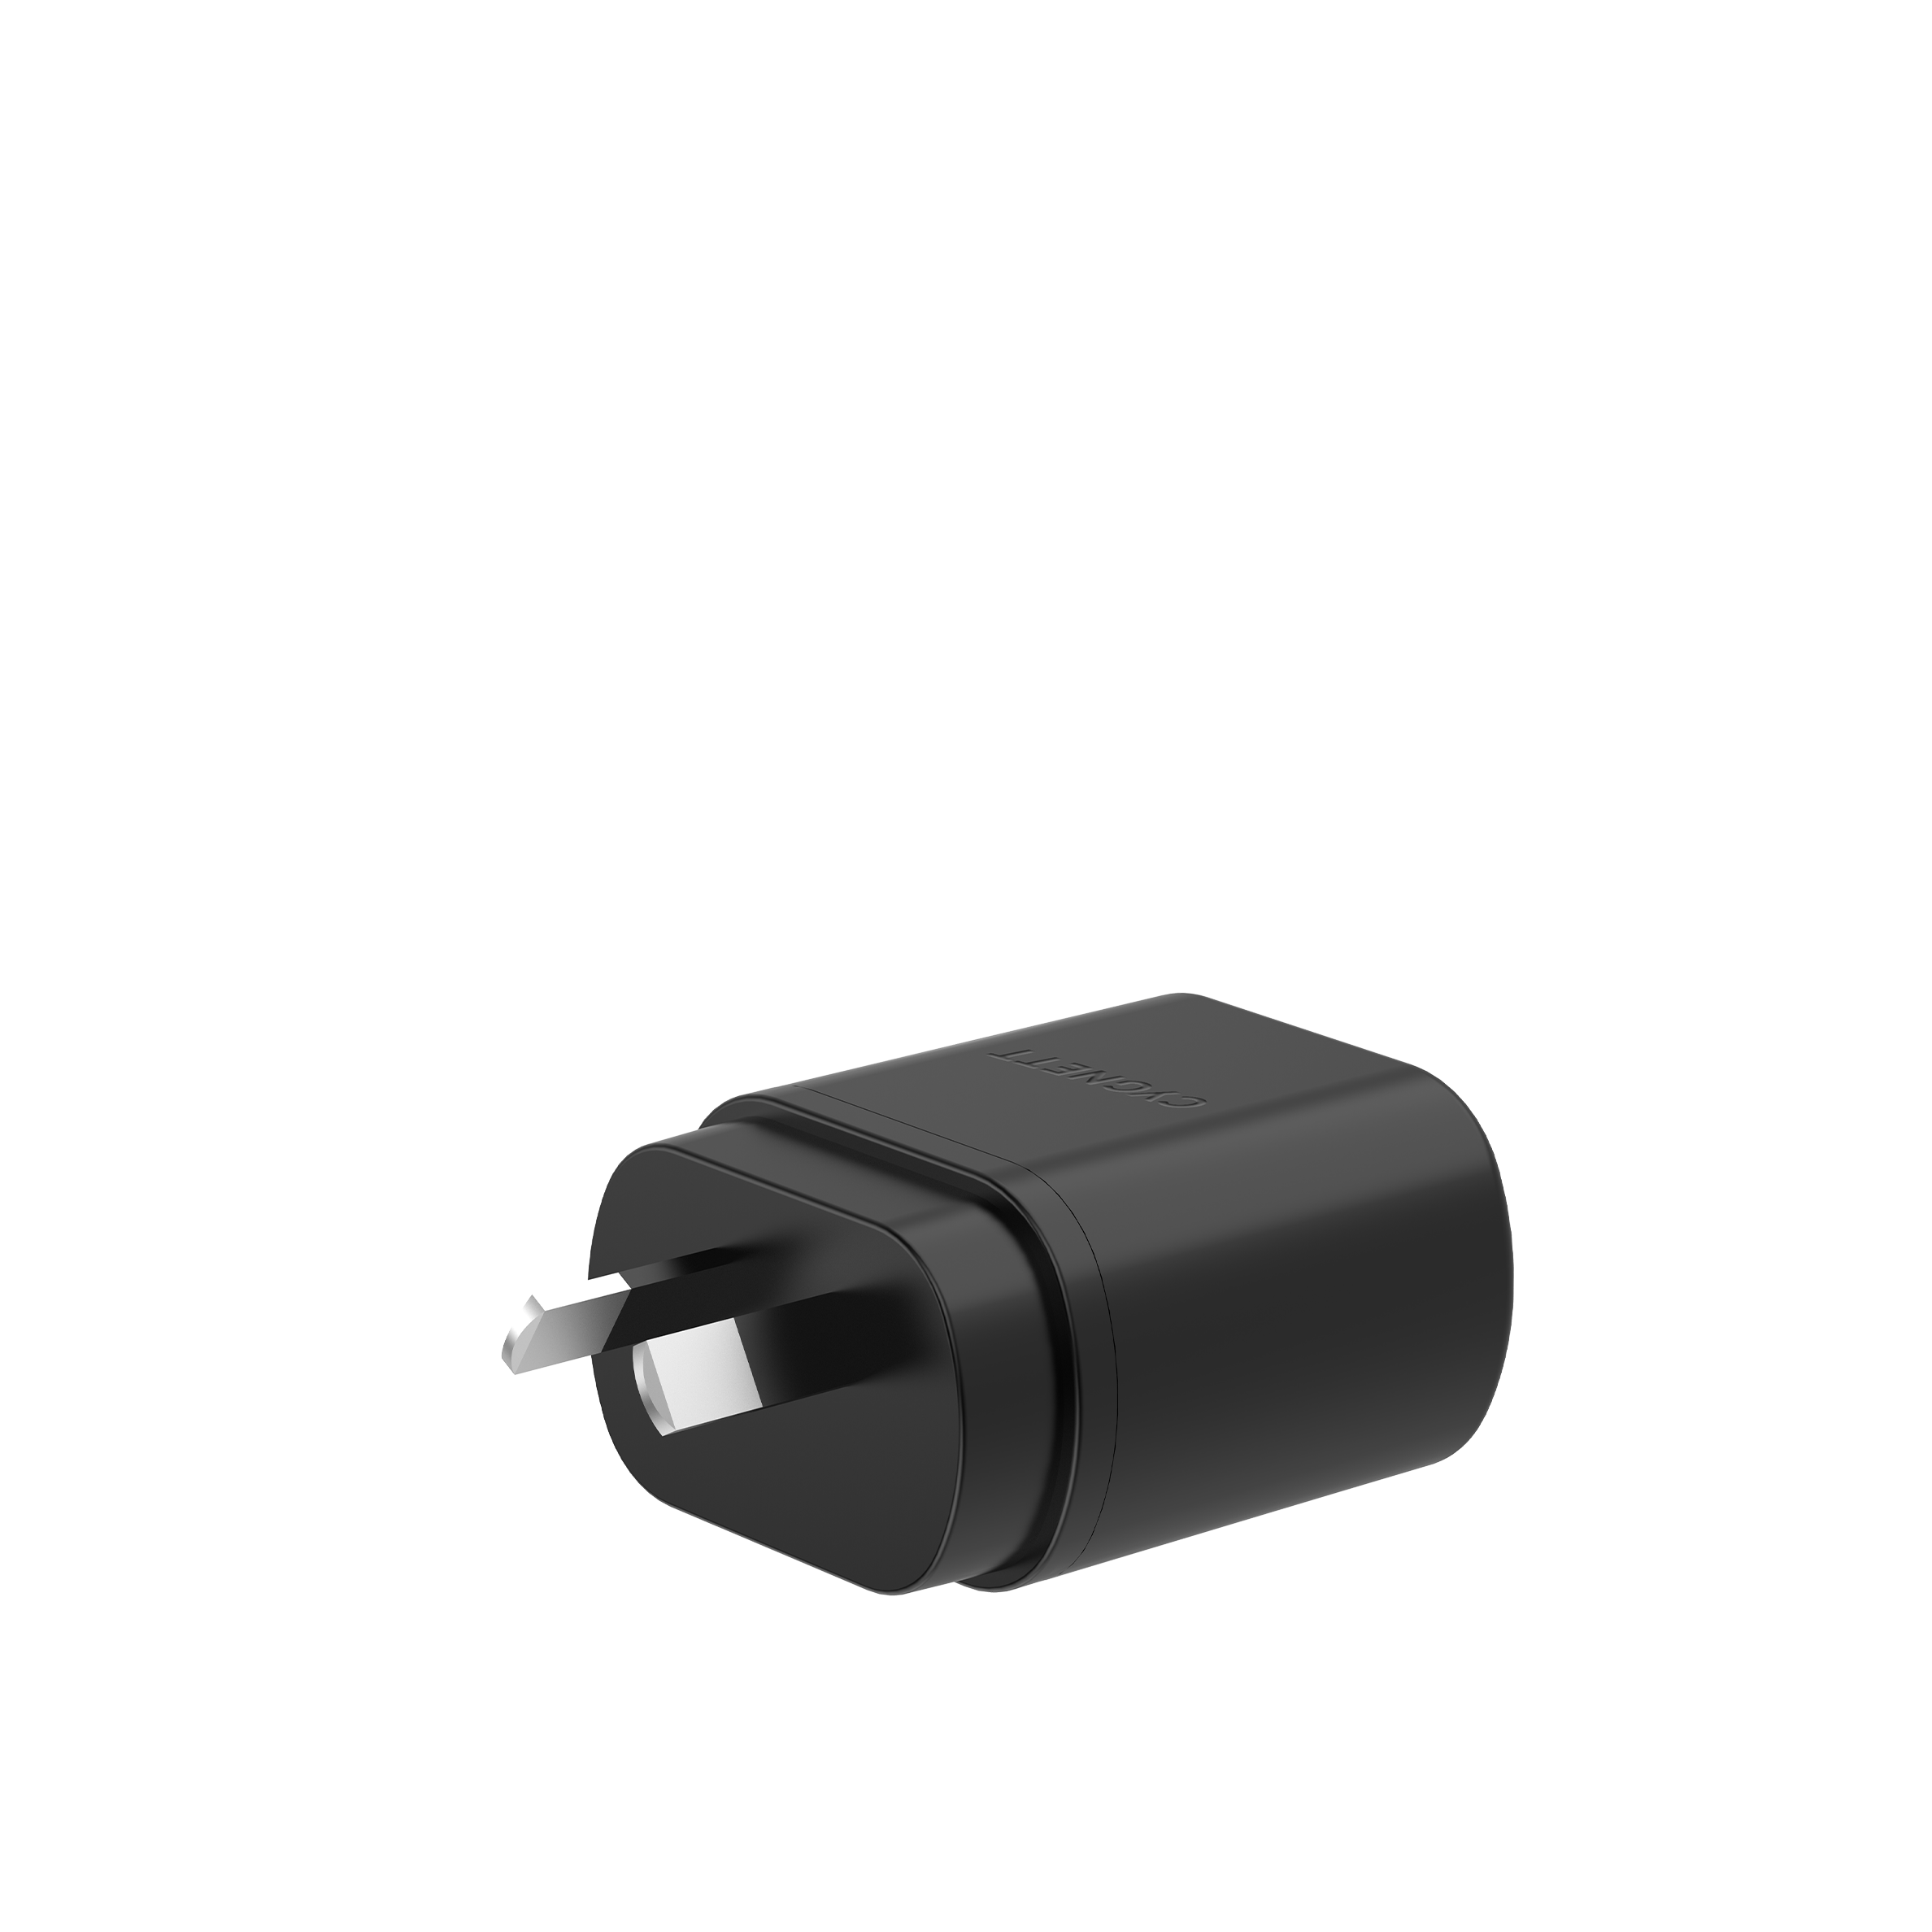 20W USB-C PD Wall Charger - Cygnett (AU)